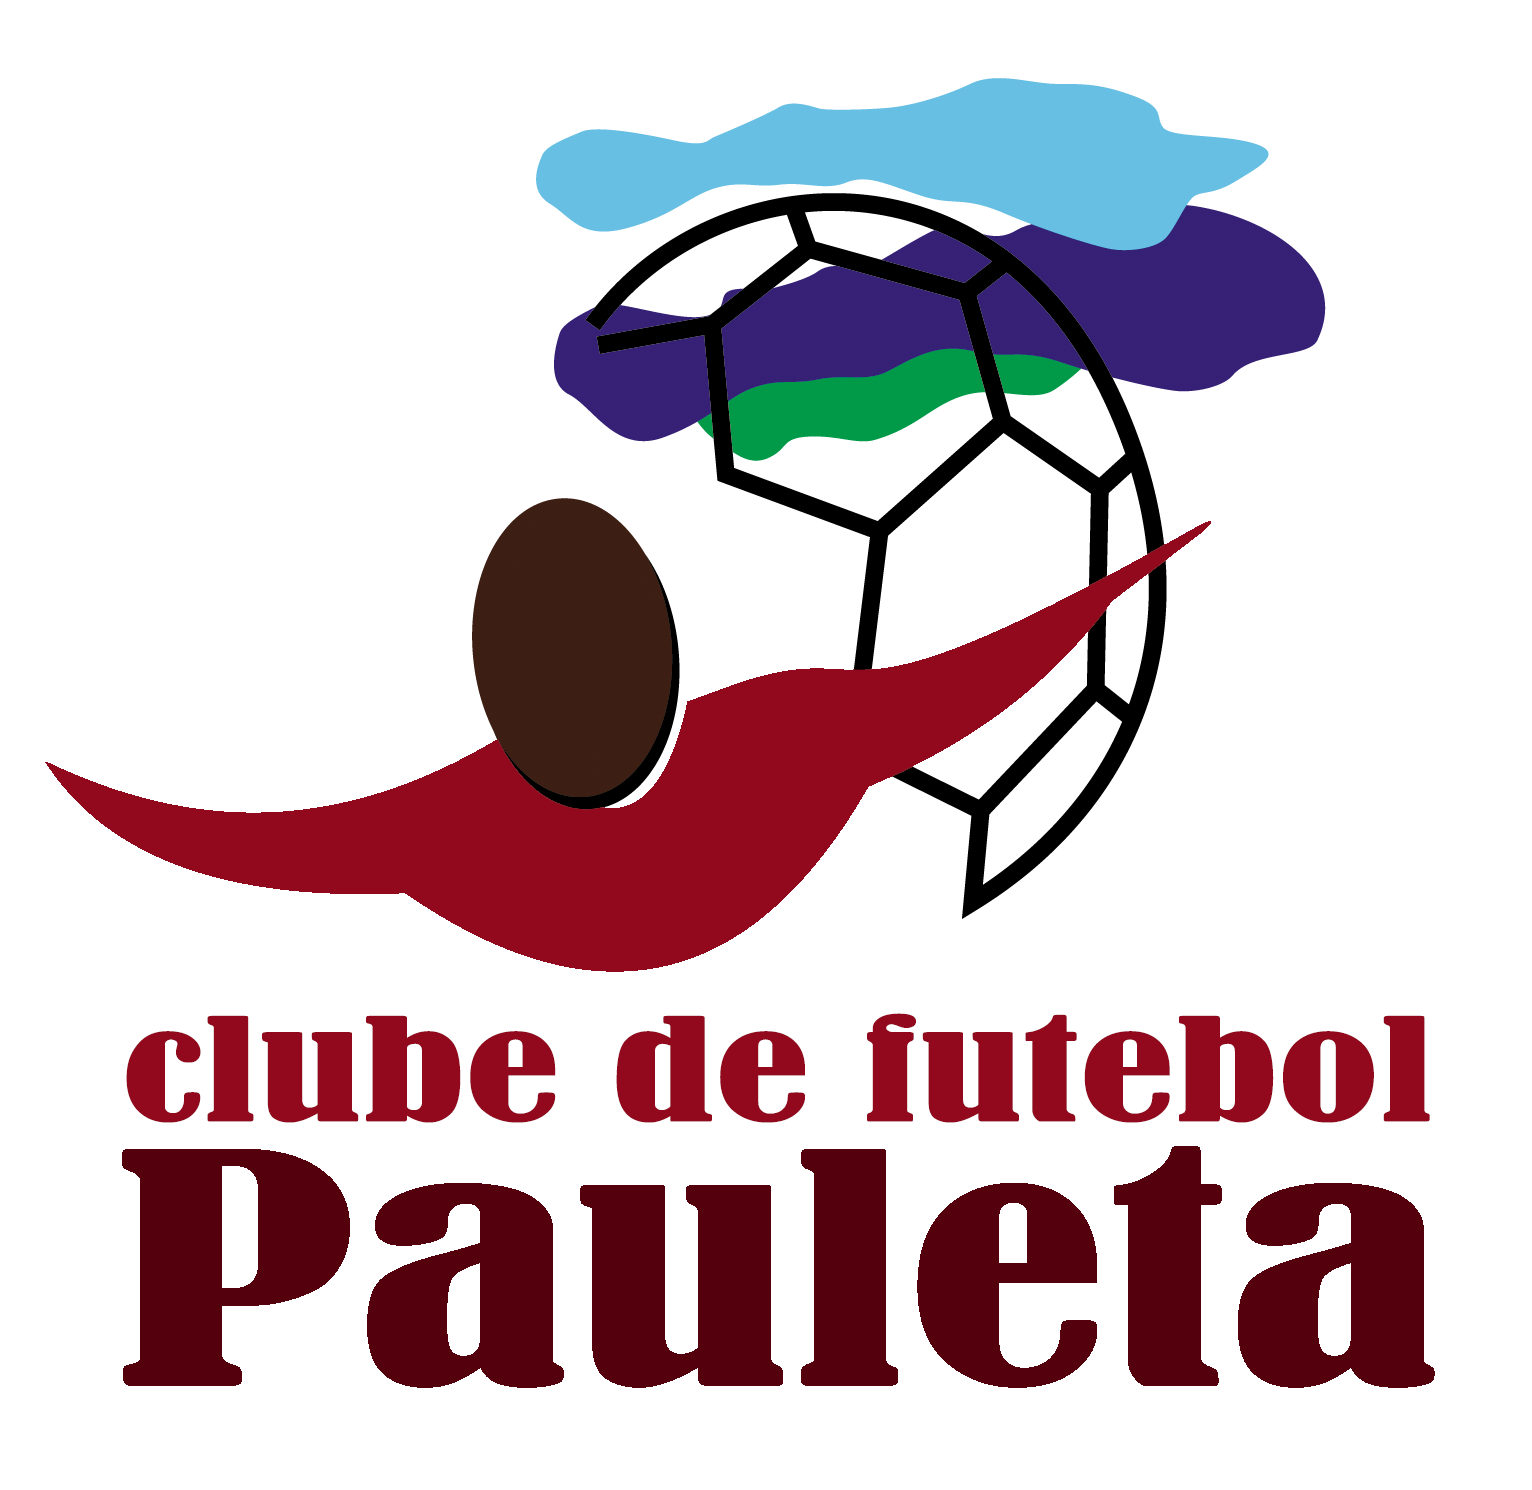 Associação Clube de Futebol Pauleta